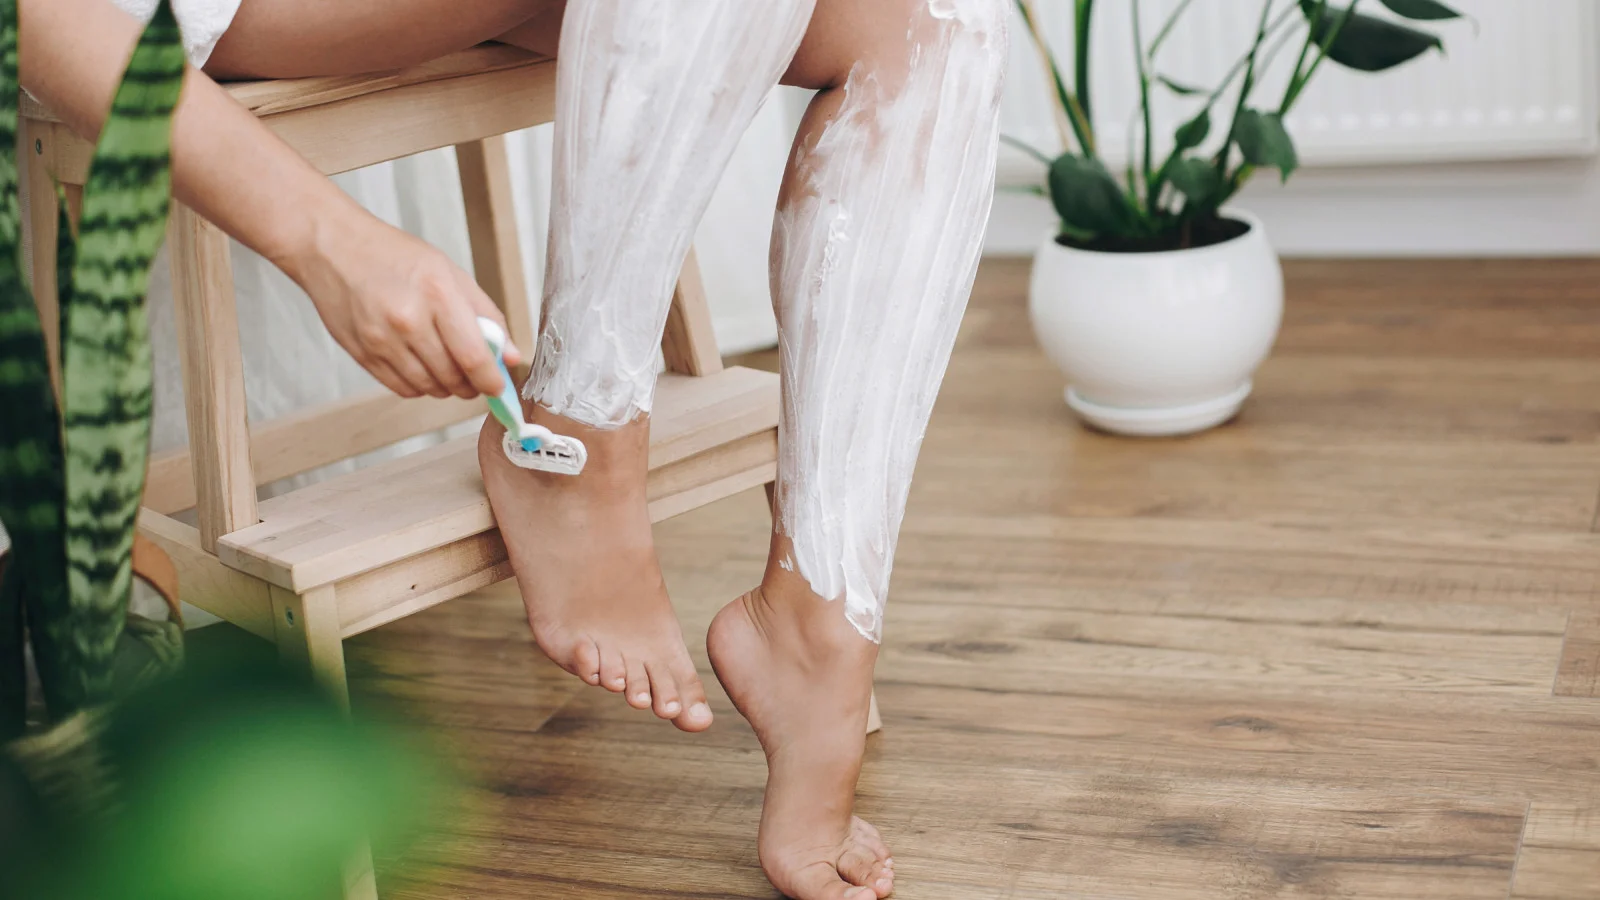 Shaving legs with shaving gel